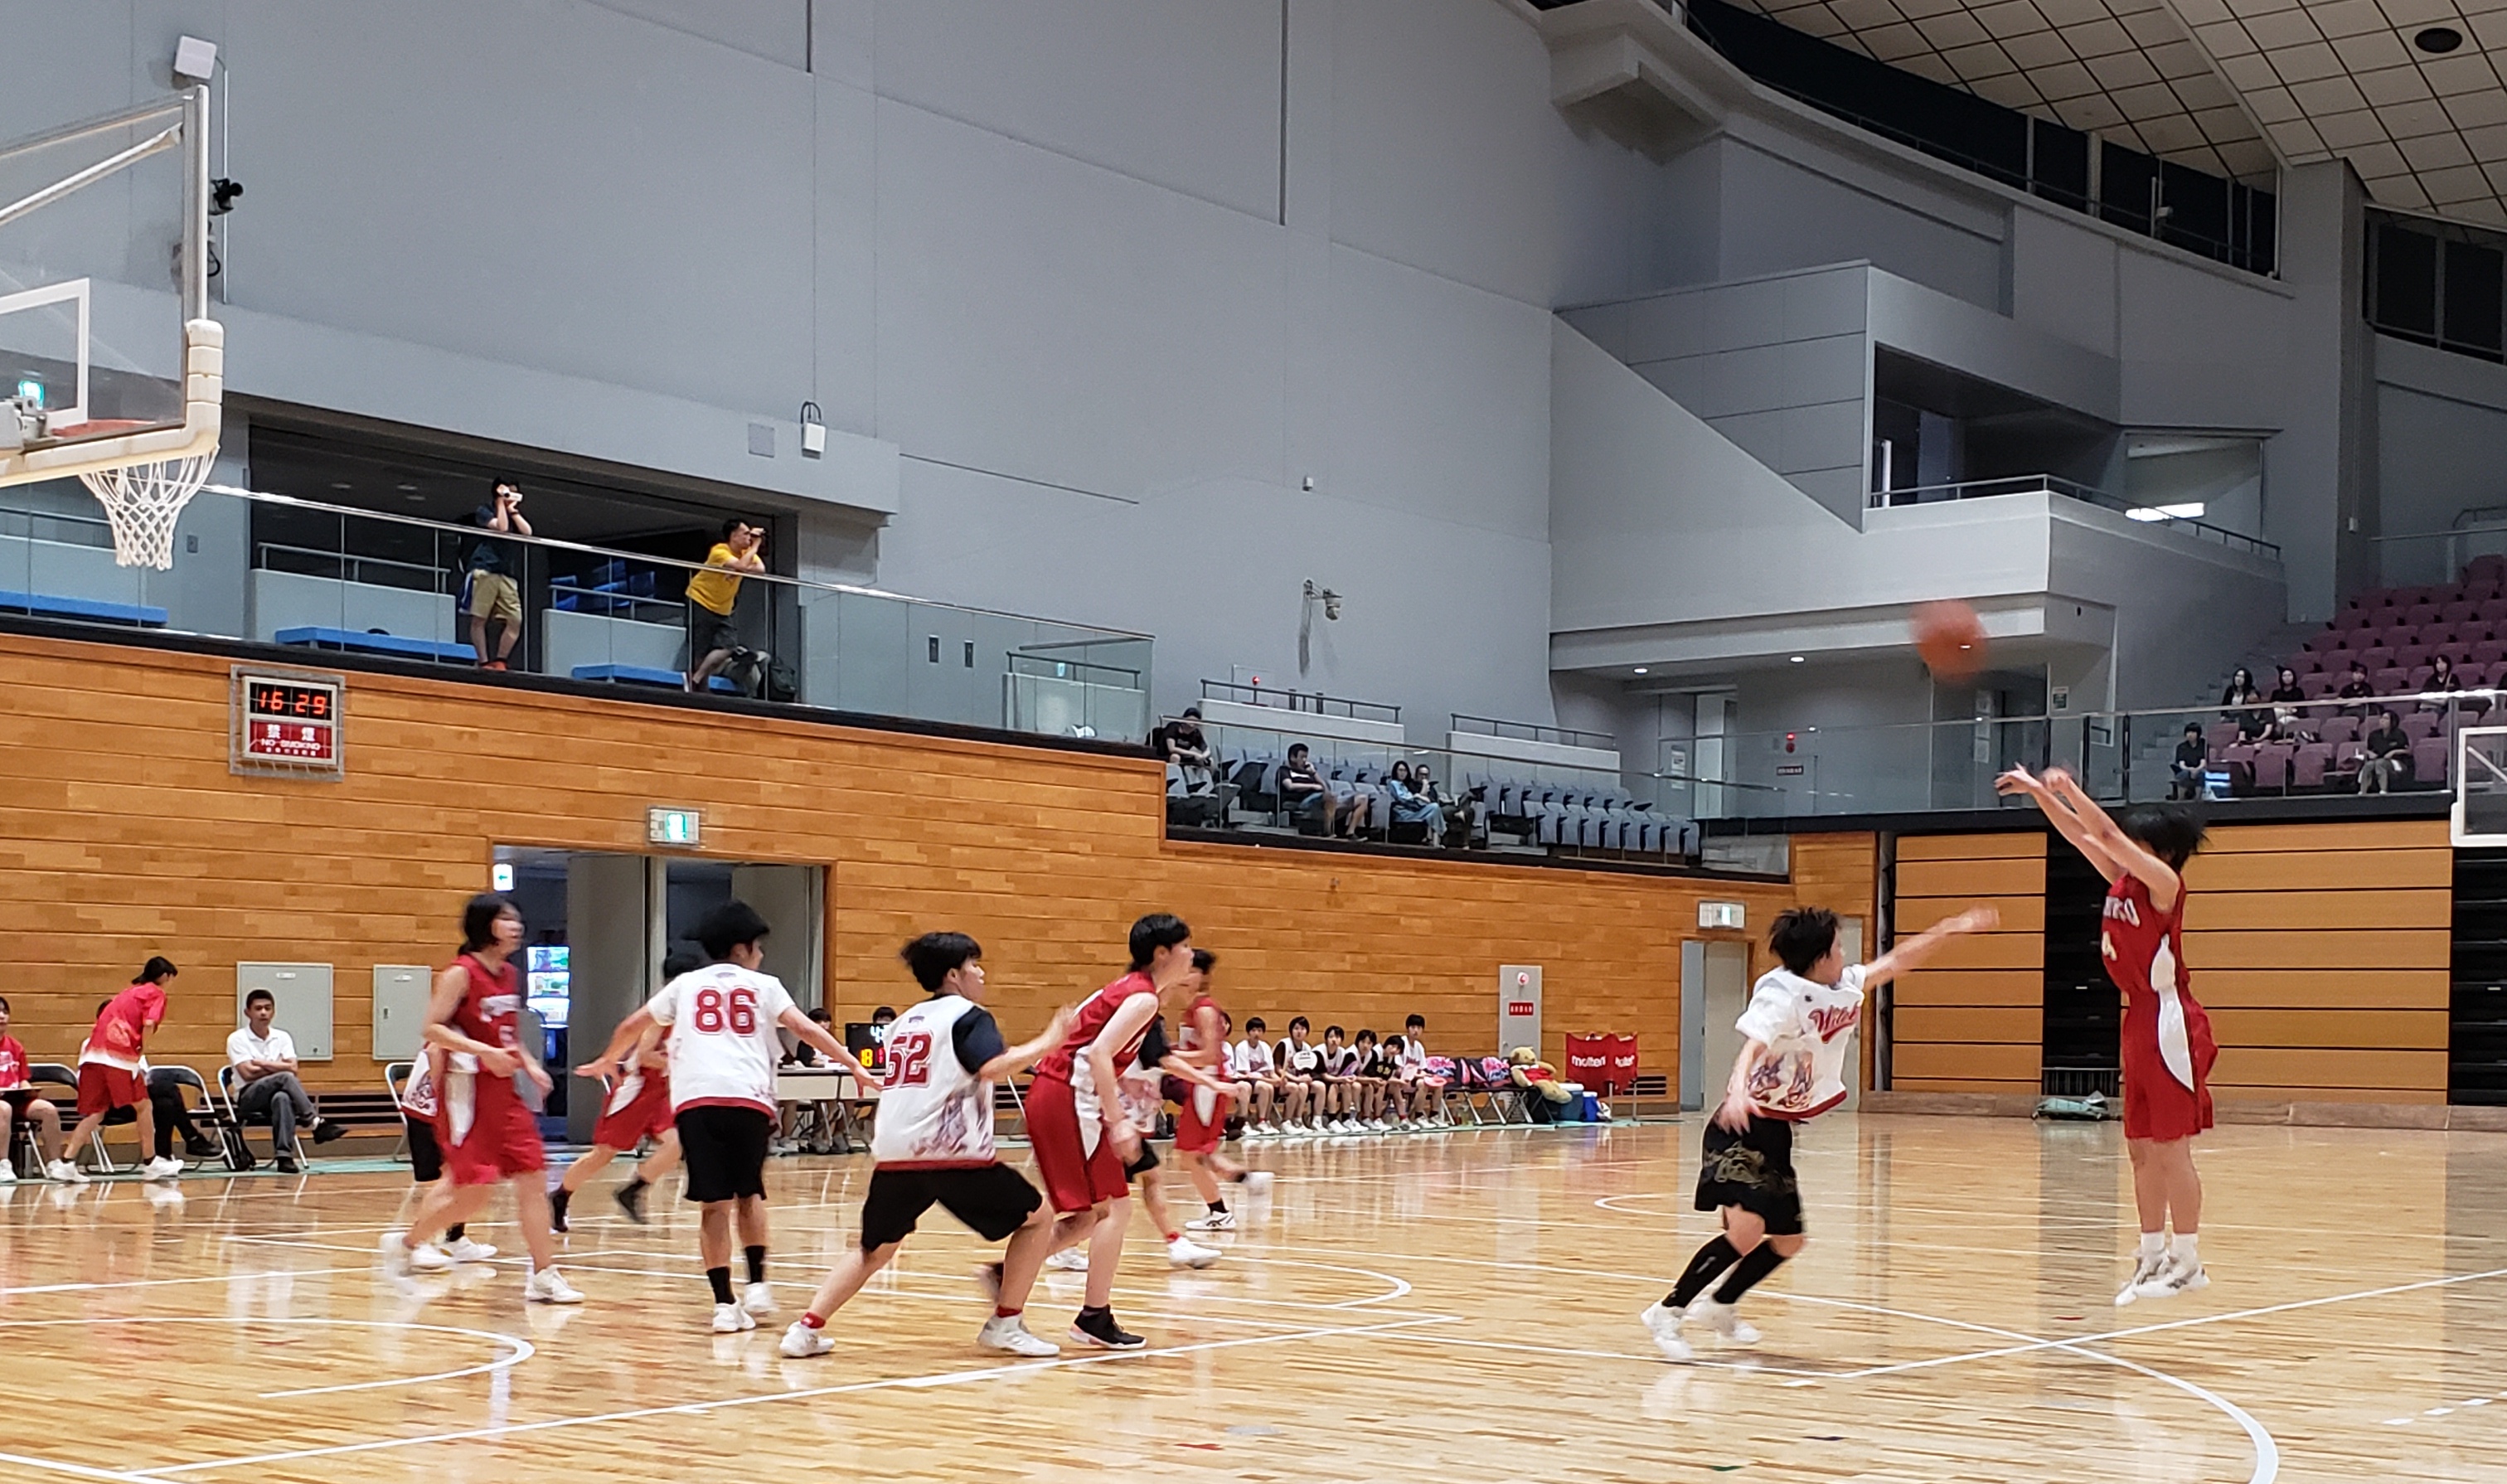 福岡 バスケ 2021年3月31日 高校バスケットボールのイベント 部活フェス をアクシオン福岡にて開催します おもれいのプレスリリース